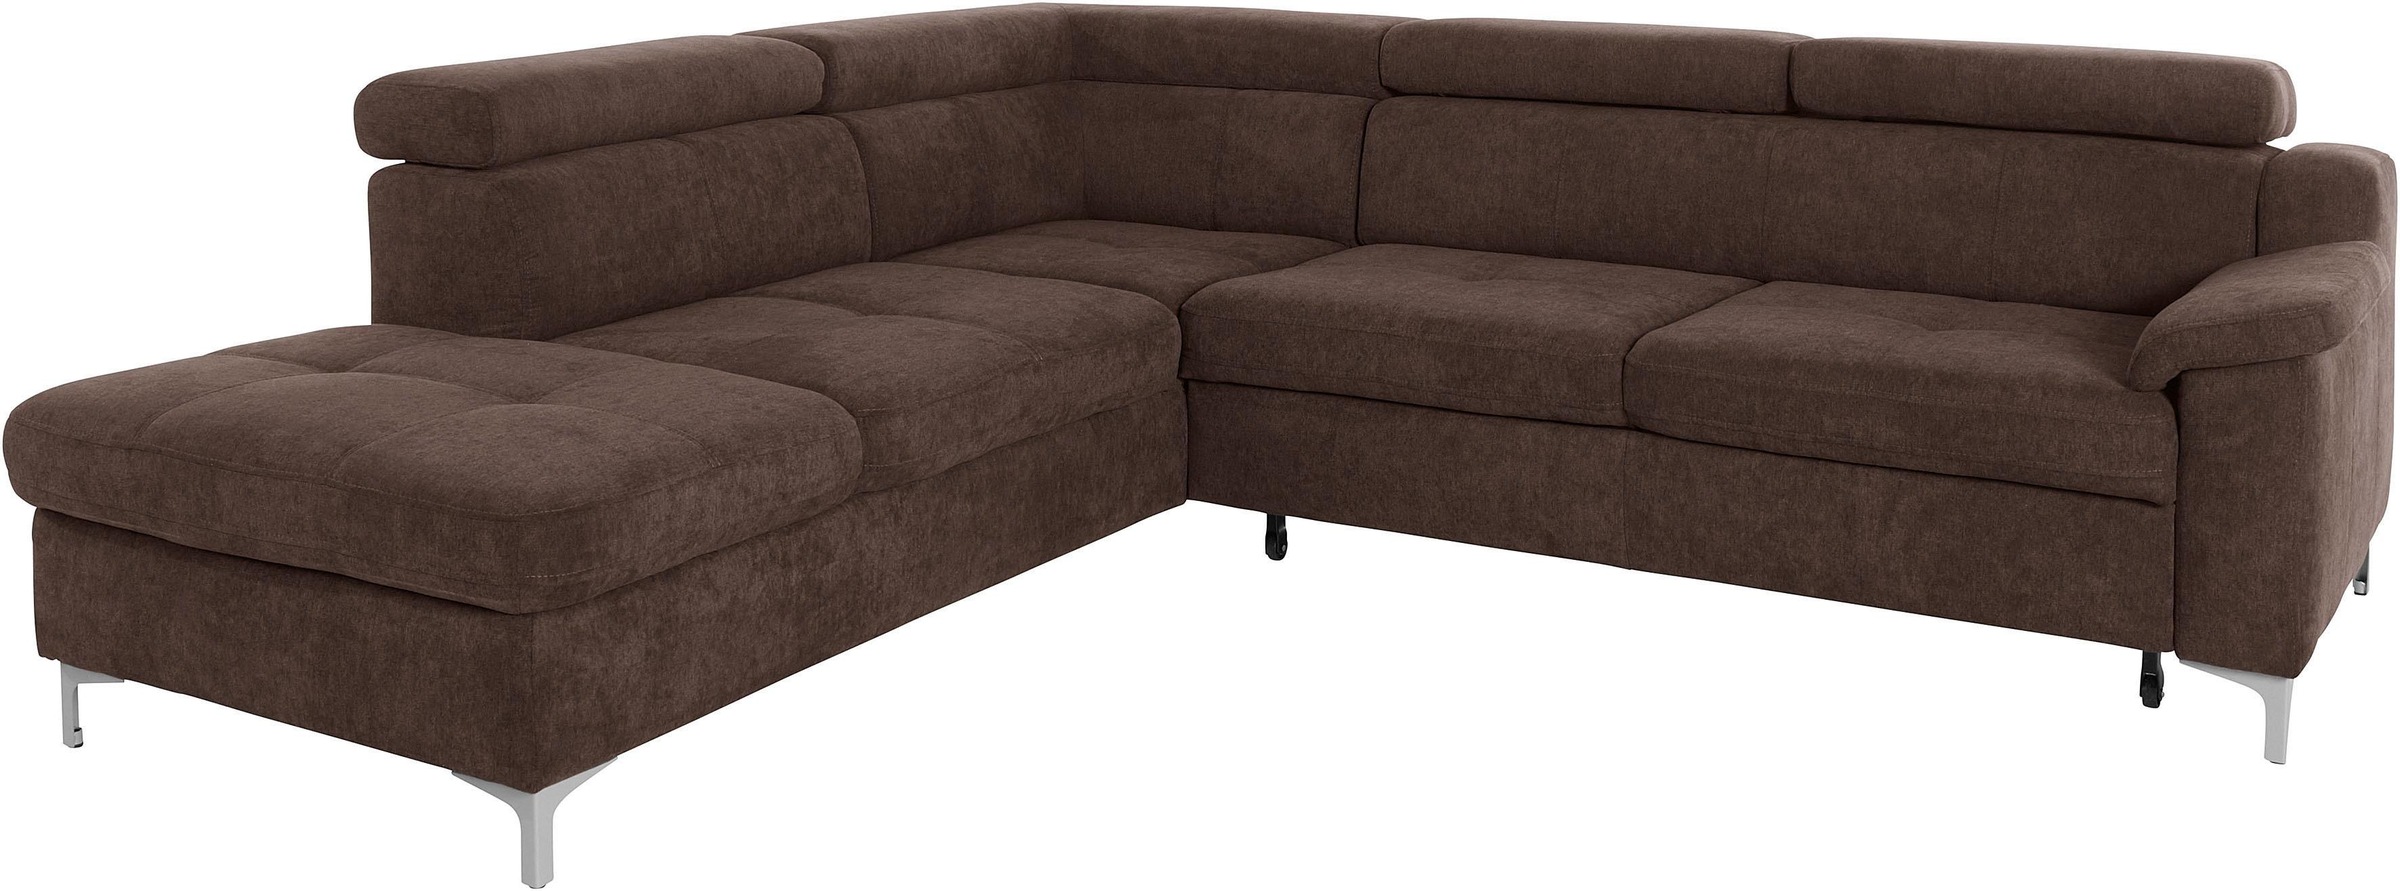 sofa Bettfunktion - mit exxpo fashion »Florenz«, Ecksofa kaufen wahlweise